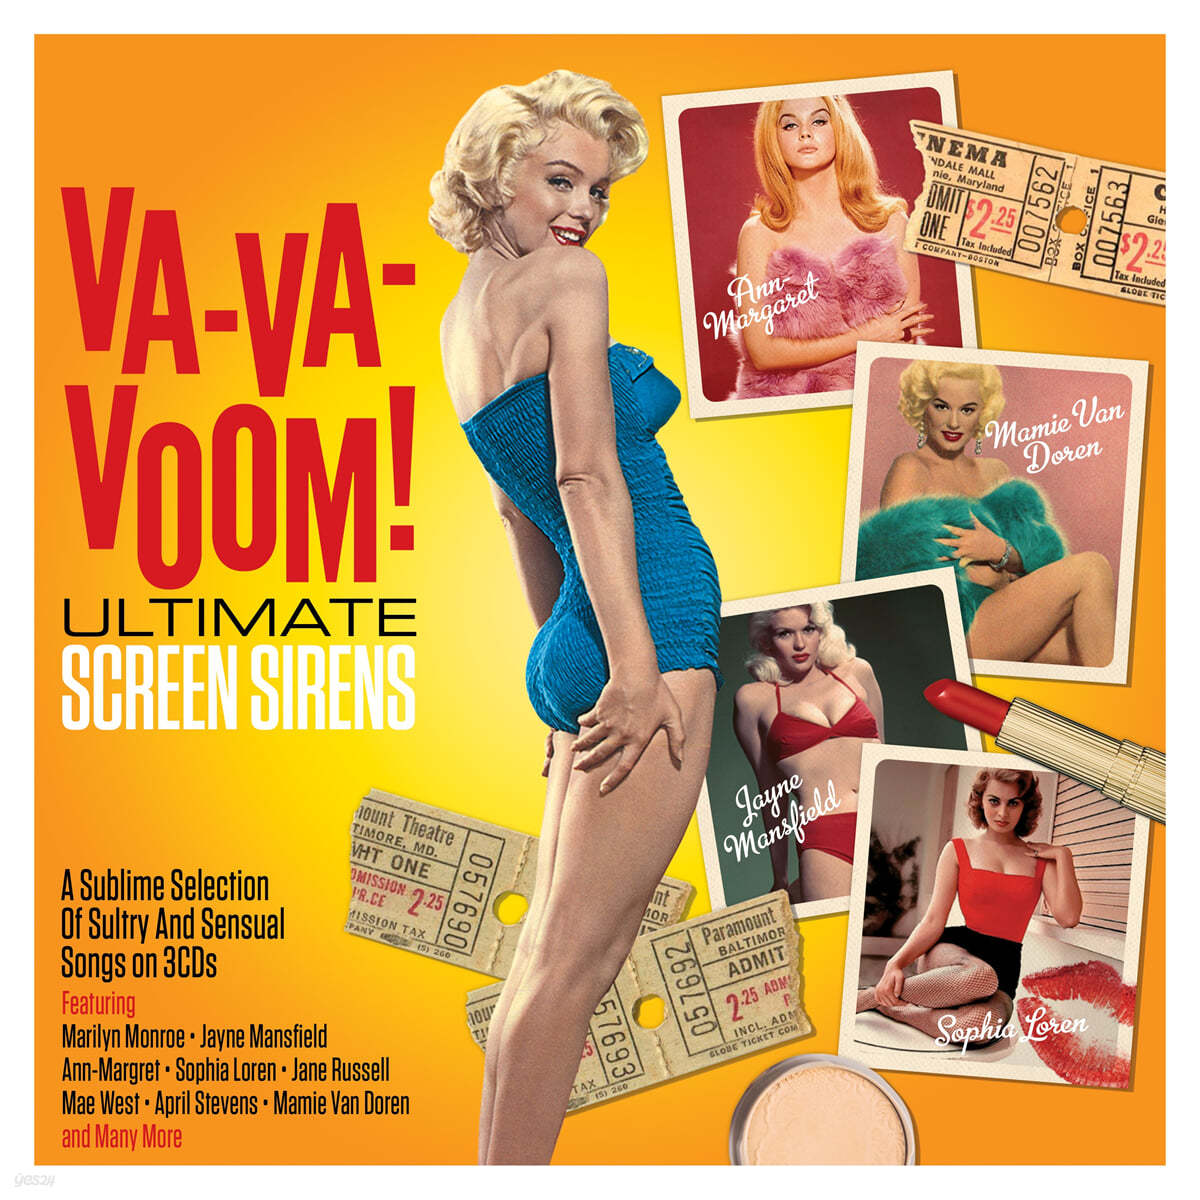 영화 속 디바들의 노래 모음집 (VA-VA-VOOM! Ultimate Screen Sirens Various Artists)